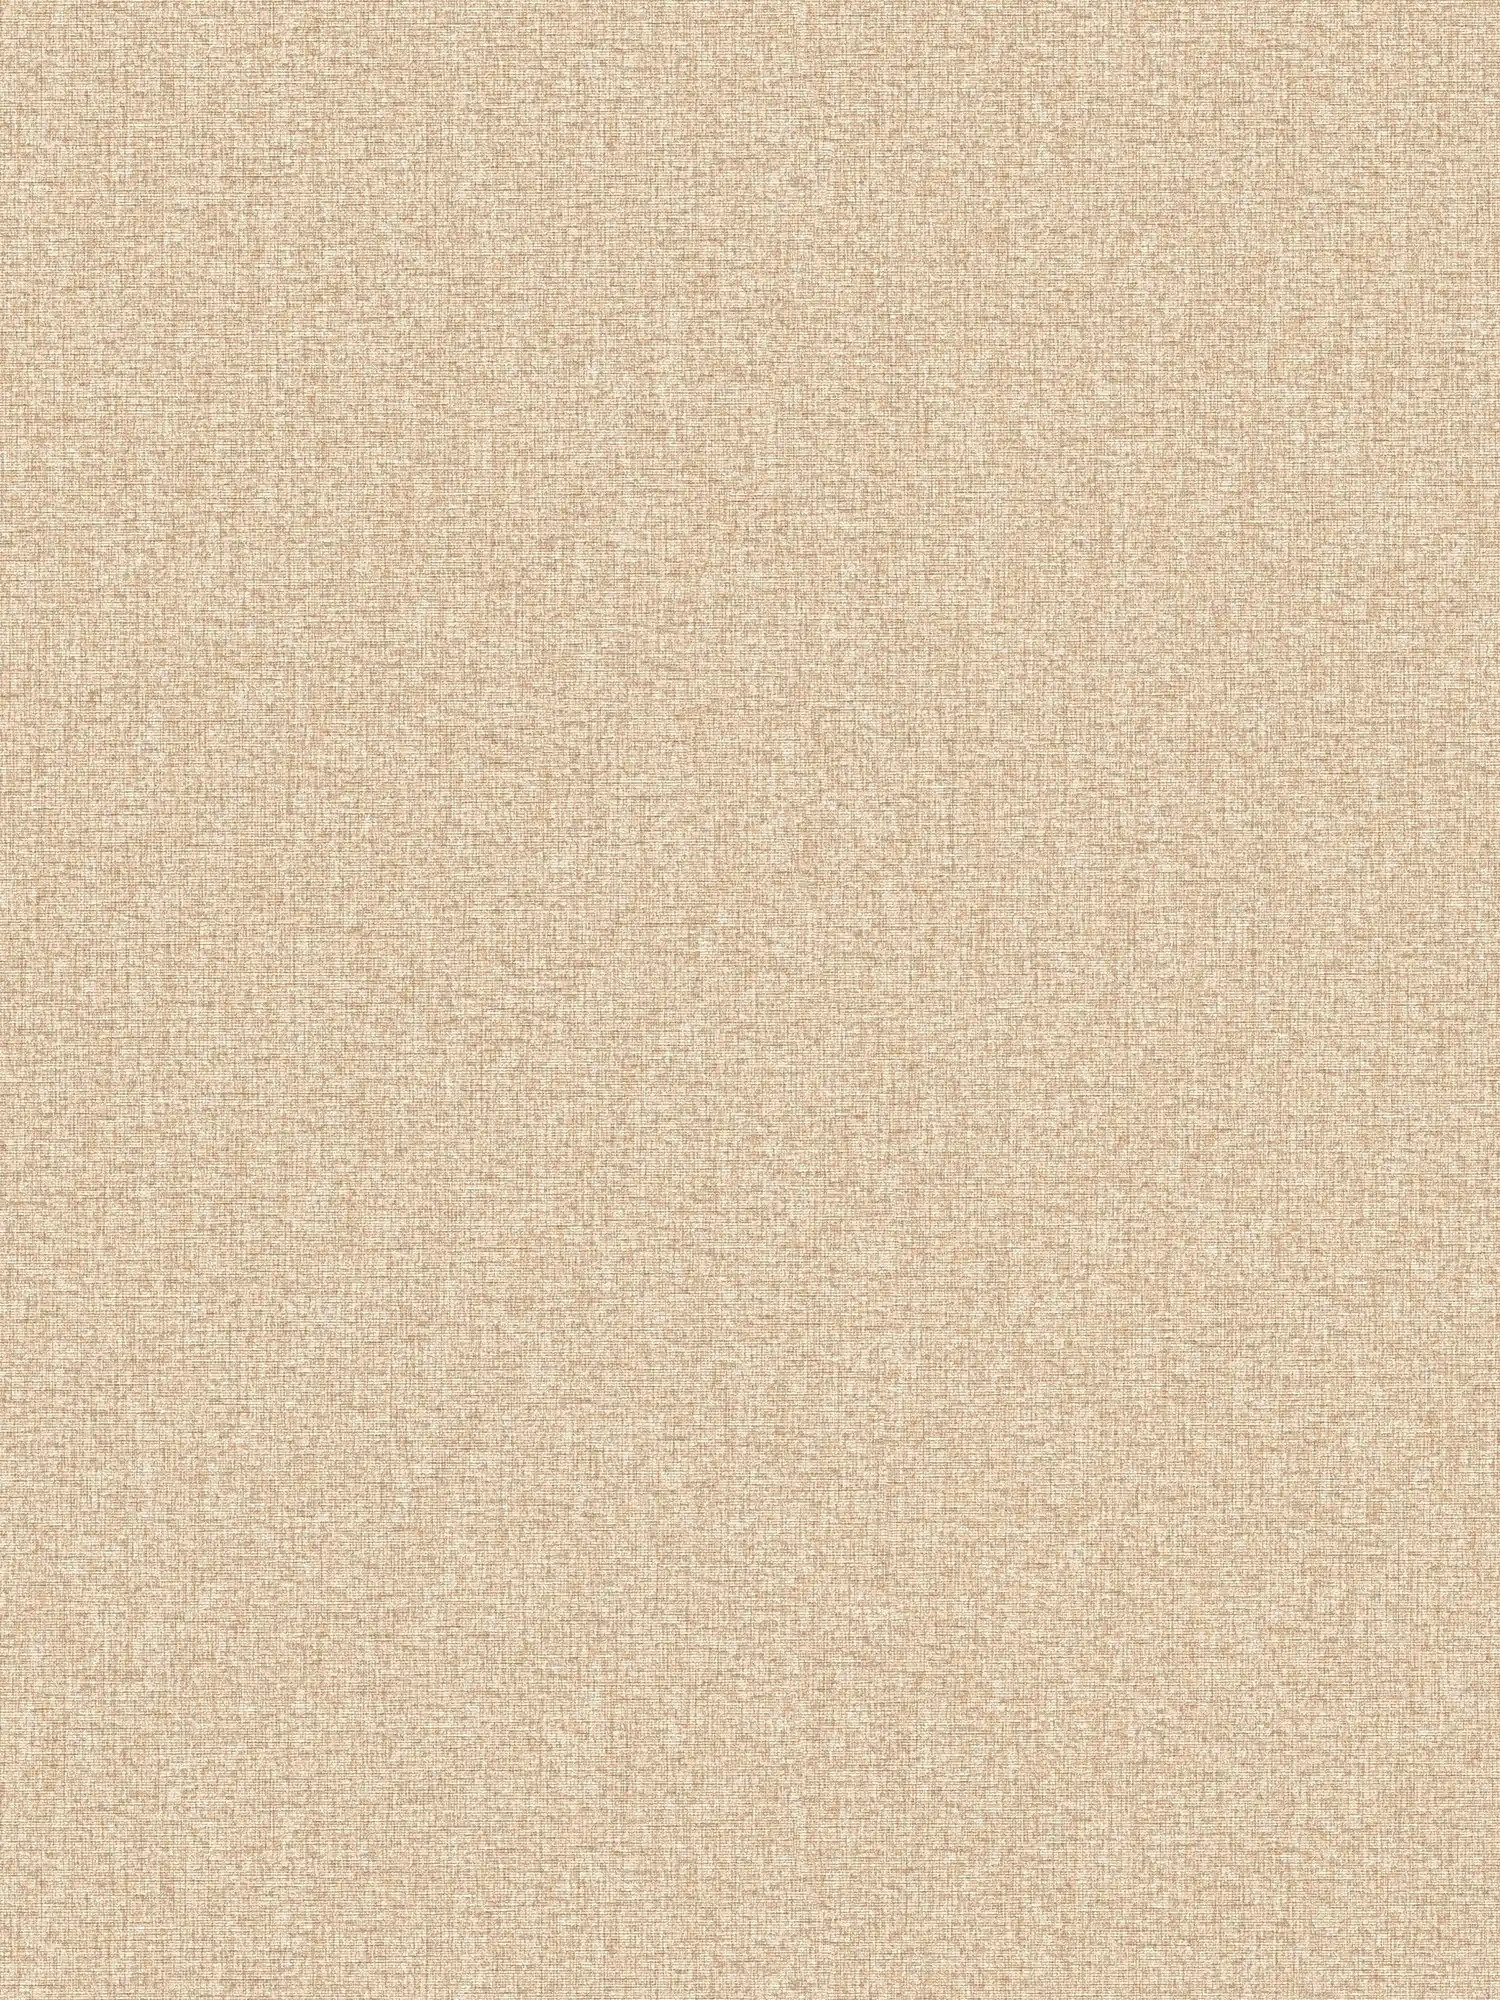 Plain wallpaper with structure design, matt - beige
